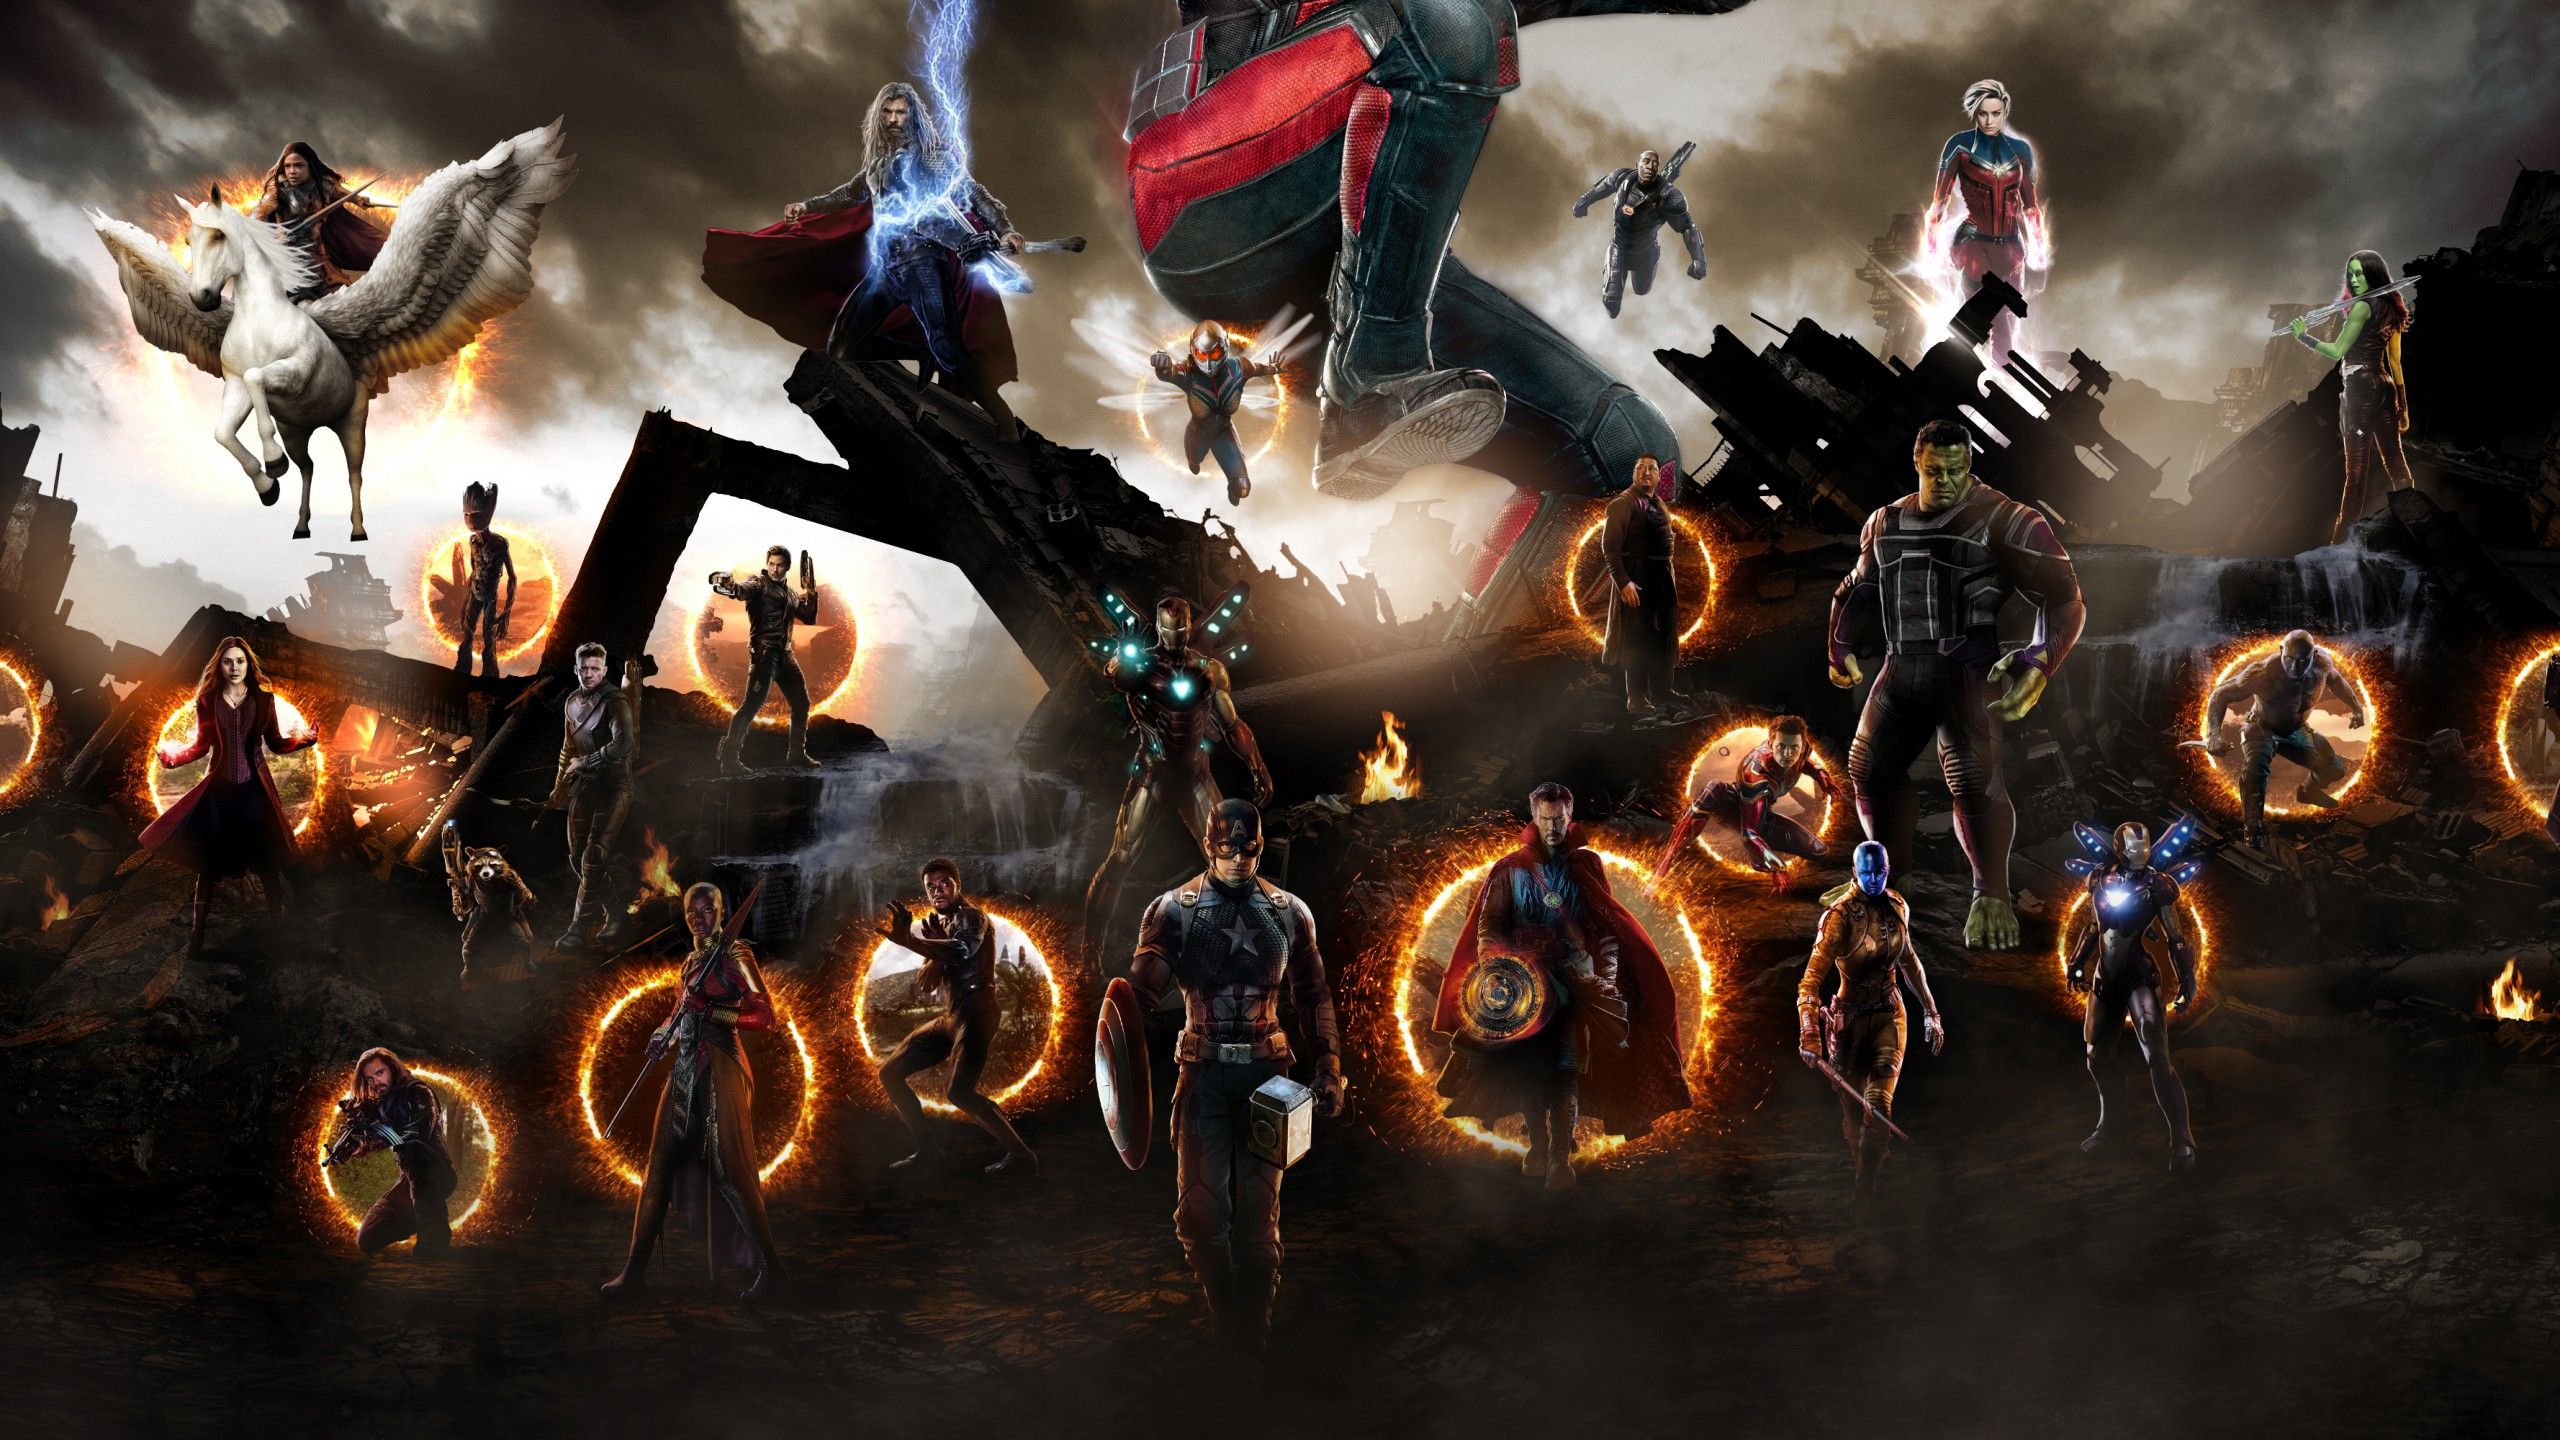 Wallpaper Avengers: Endgame, Final battle, 4K, Movies